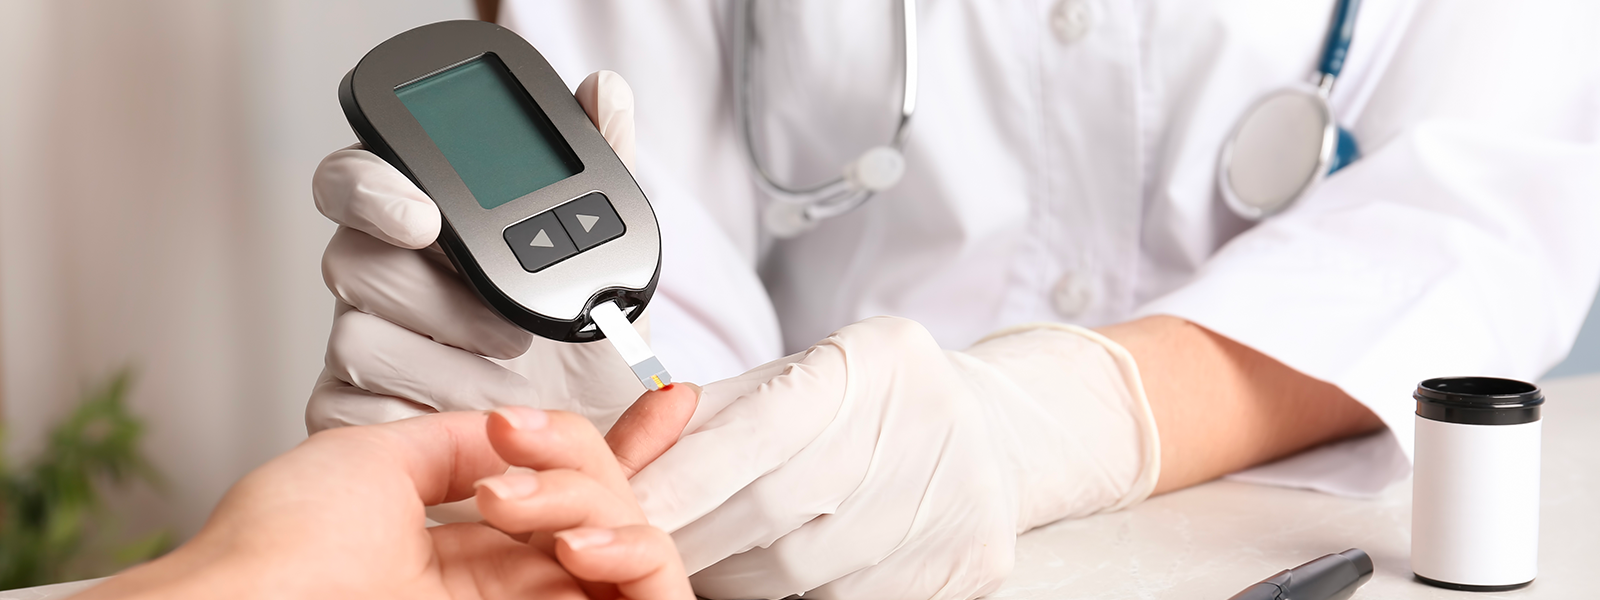 Tu médico te explicará como utilizar correctamente tu glucómetro y cual es mejor para ti.